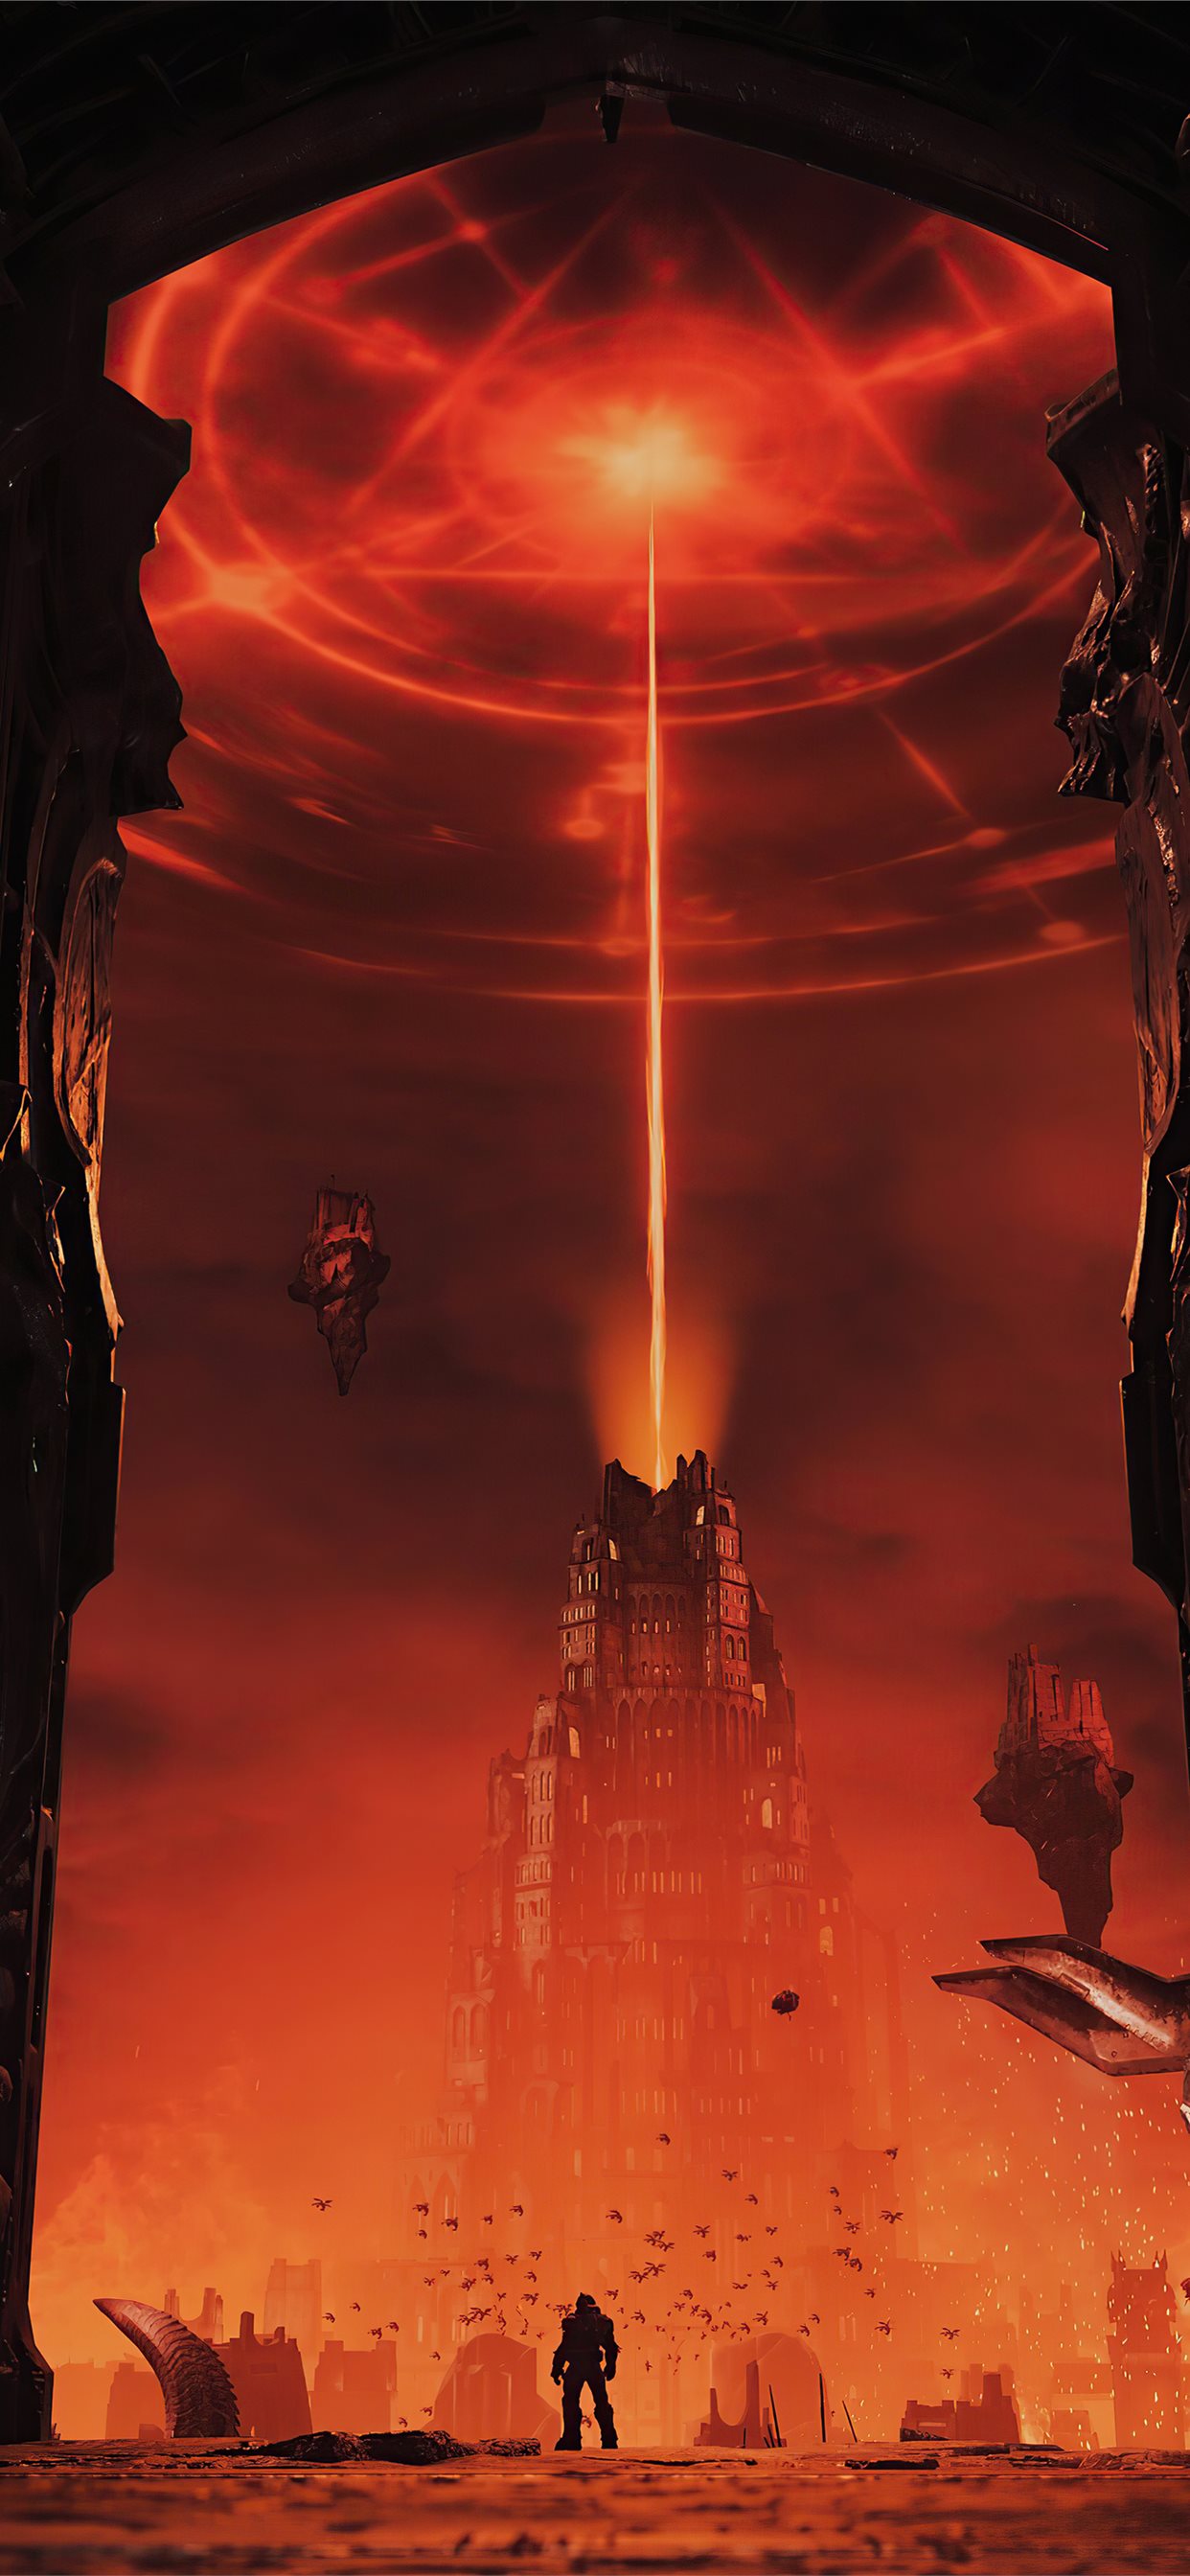 Doom Eternal game: Khám phá một sự kết hợp đầy thú vị giữa tốc độ và bạo lực trong trò chơi Doom Eternal. Điều khiến trò chơi tuyệt vời hơn nữa là đồ họa cực đỉnh. Bạn sẽ không thể rời mắt khỏi màn hình trong suốt quá trình nhập vai vào vai diệt quỷ.